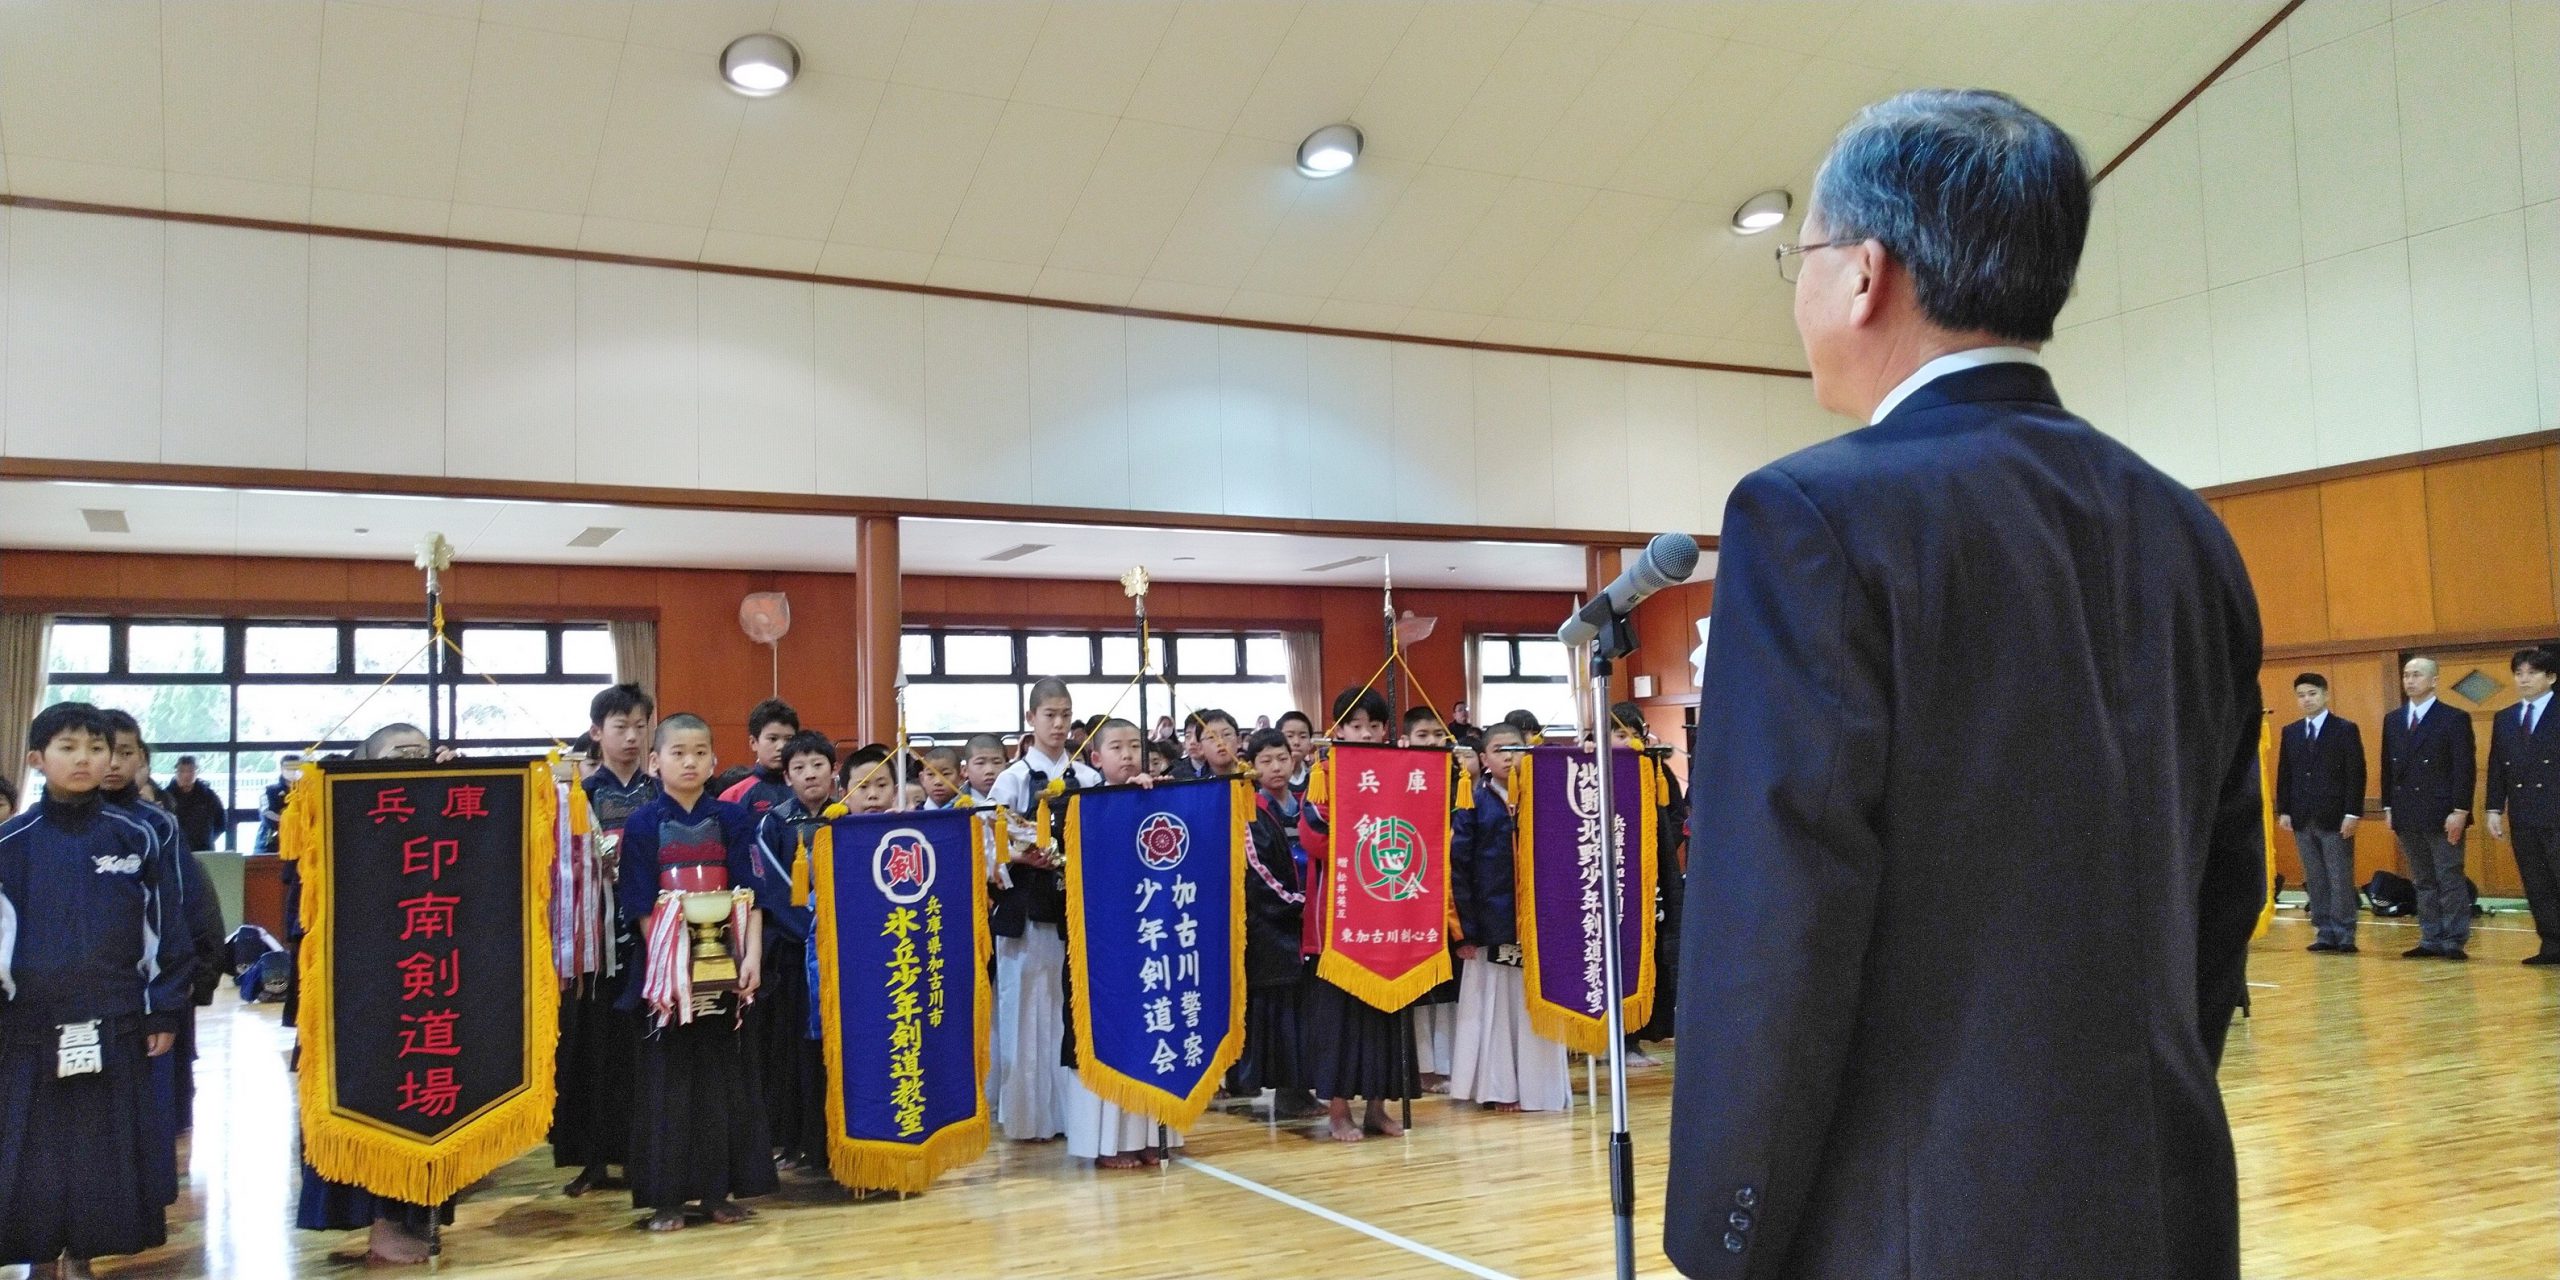 2020年2月2日(日) 第２６回加古川市少年剣道教室対抗剣道大会に出席